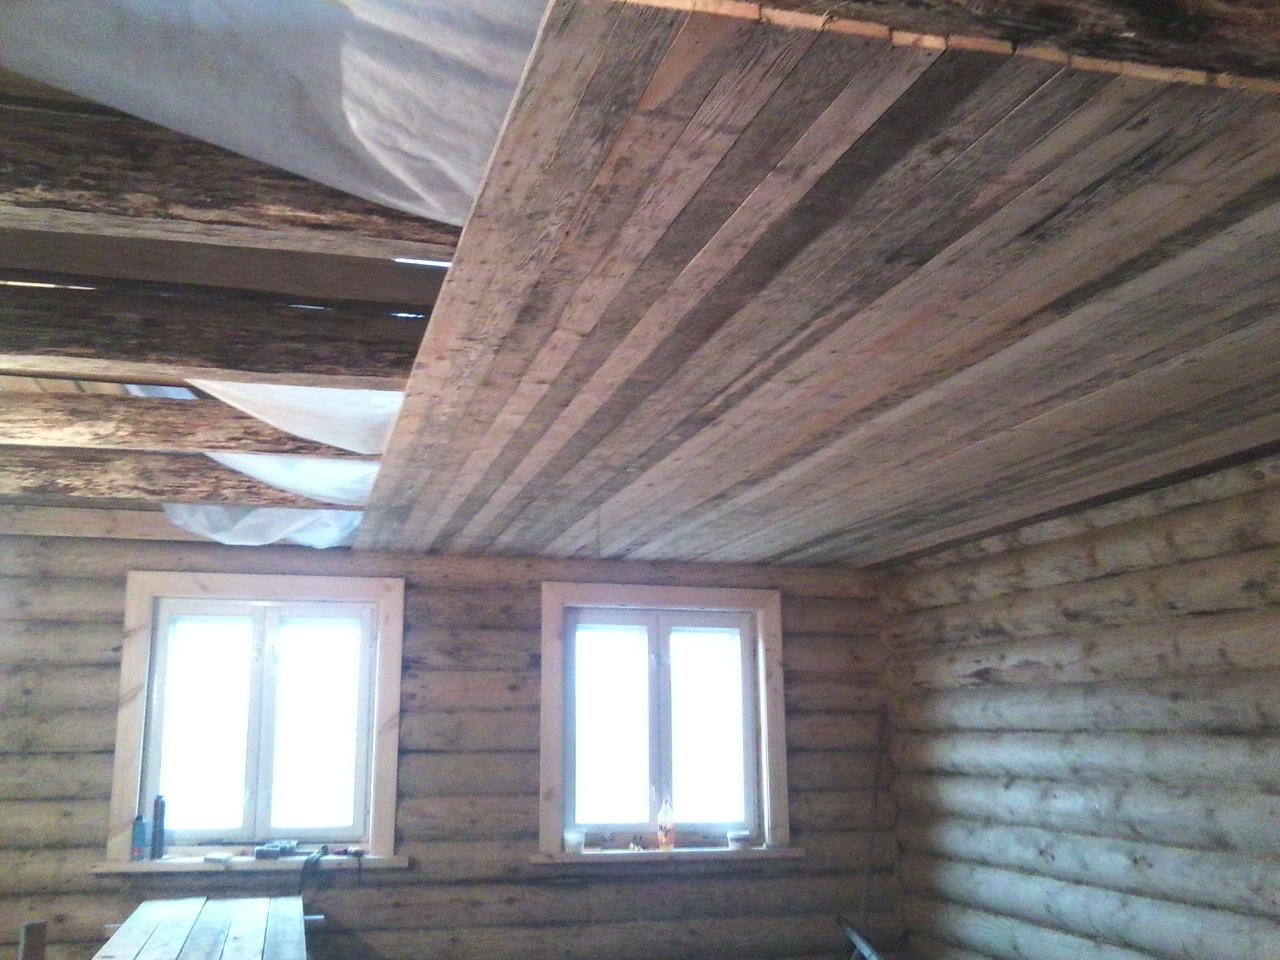 Подшивка чернового потолка по деревянным балкам